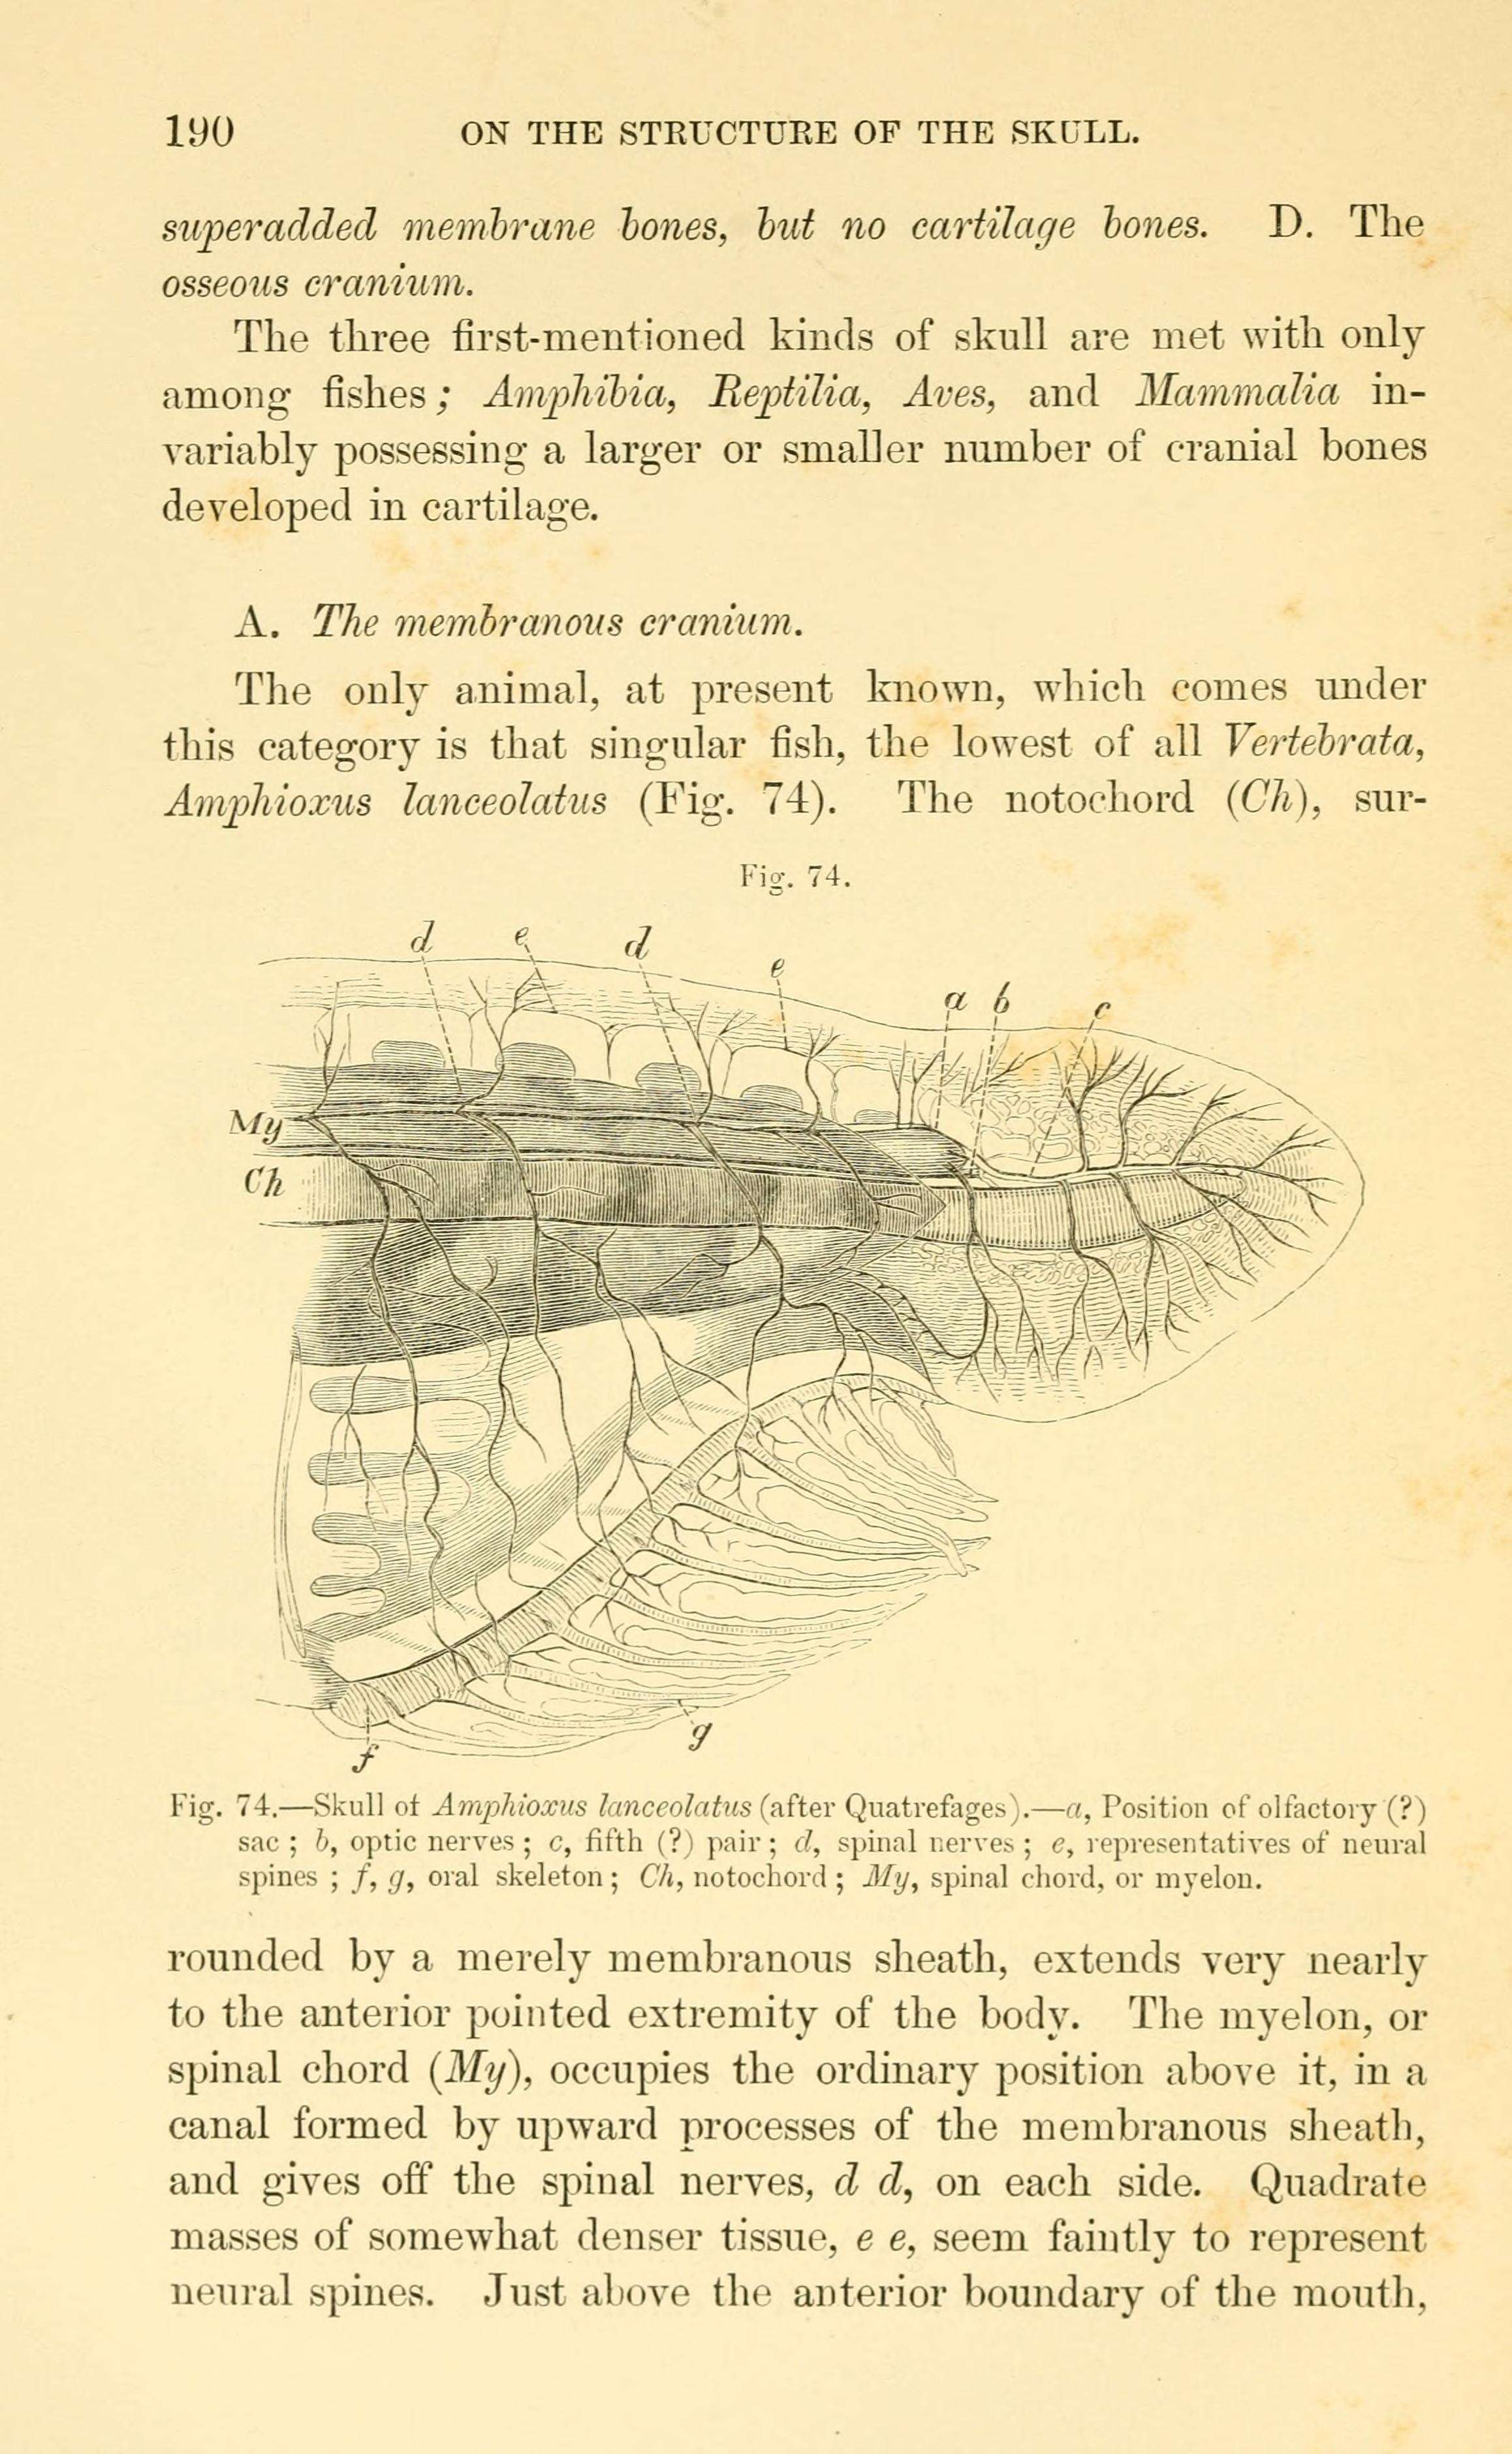 Sivun Branchiostoma lanceolatum (Pallas 1774) kuva